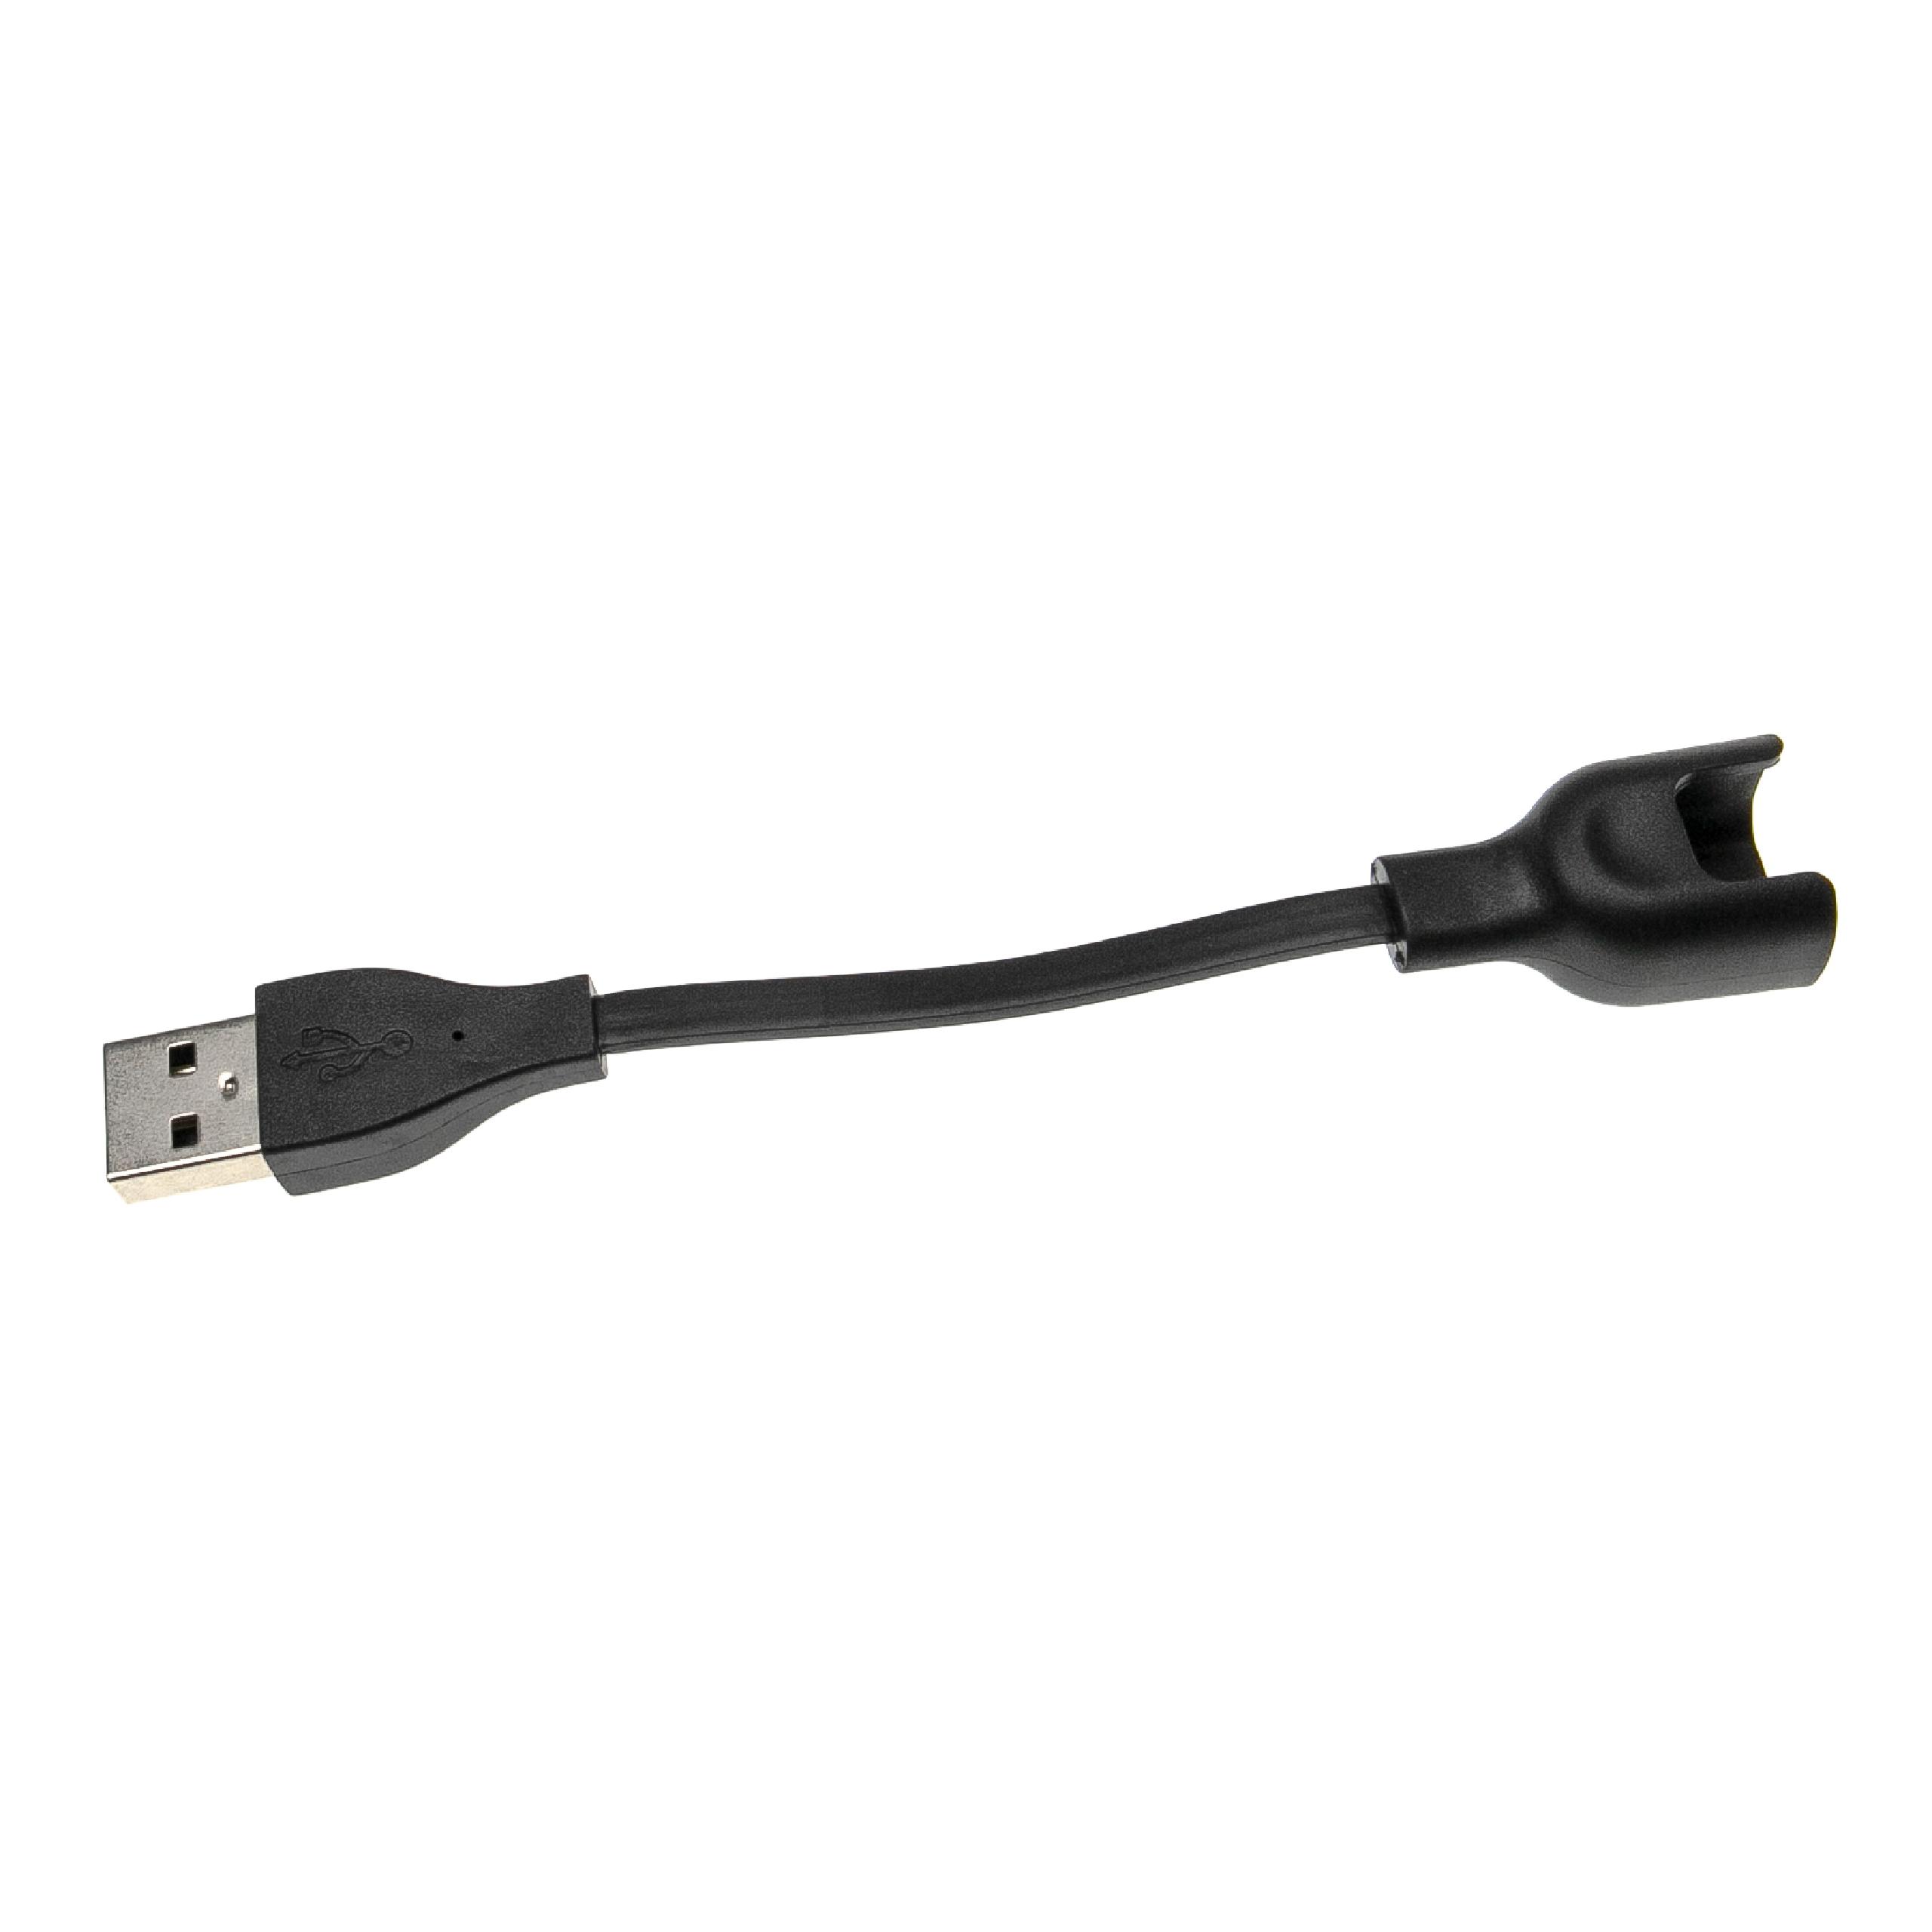 Câble de charge pour bracelet d'activité Huawei Honor et autres – câble de 12,5 cm, fiche USB